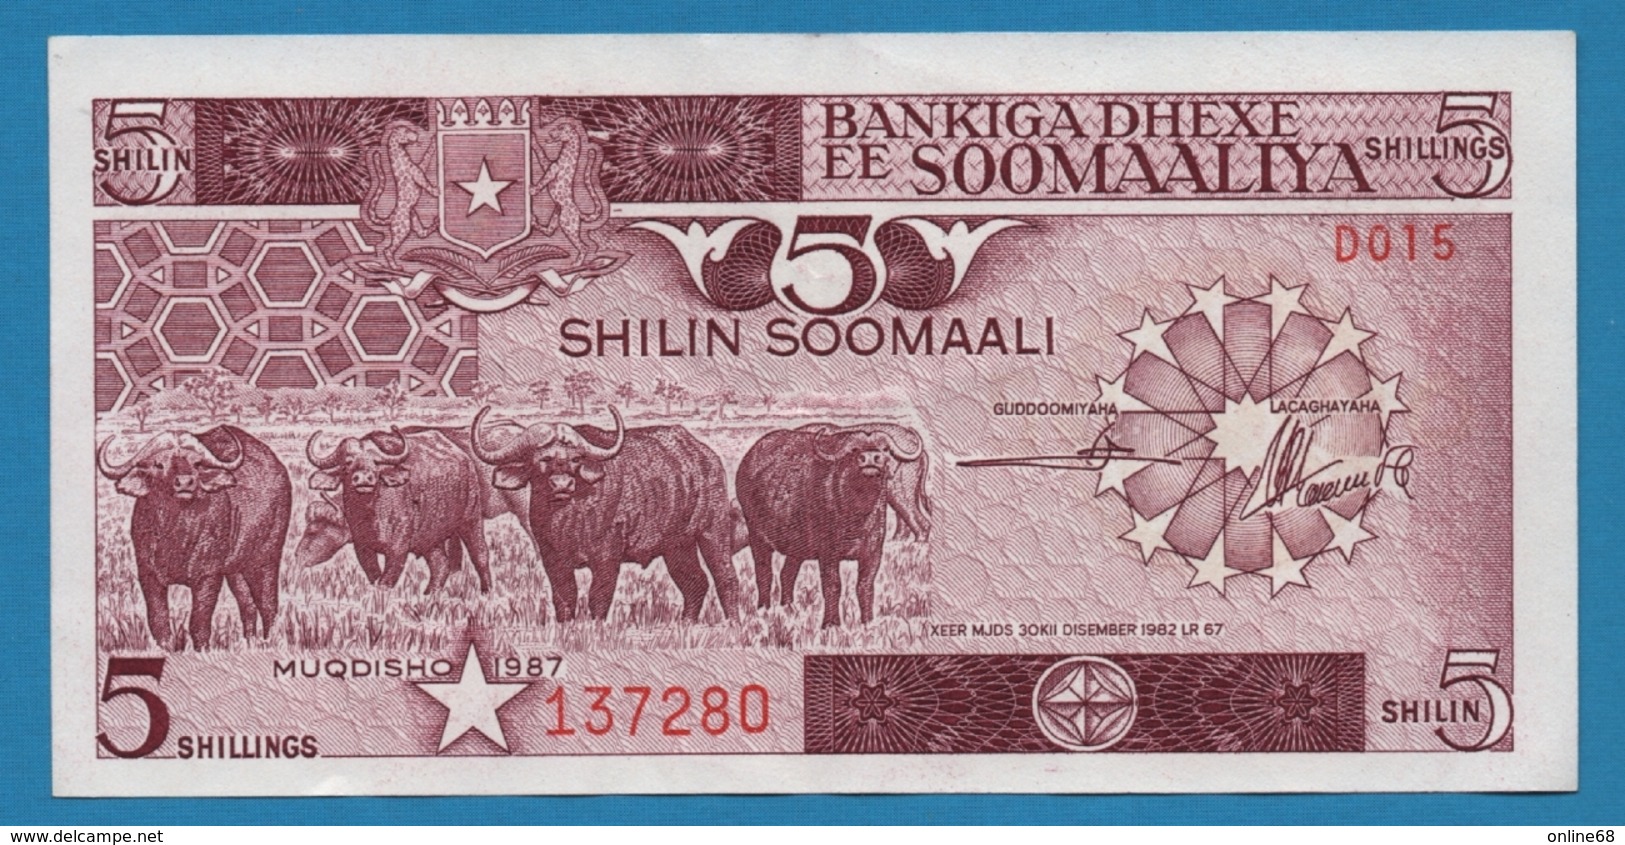 SOMALIA 5 Shilin Soomaali	1987	# D015 137280 P# 31c - Somalia